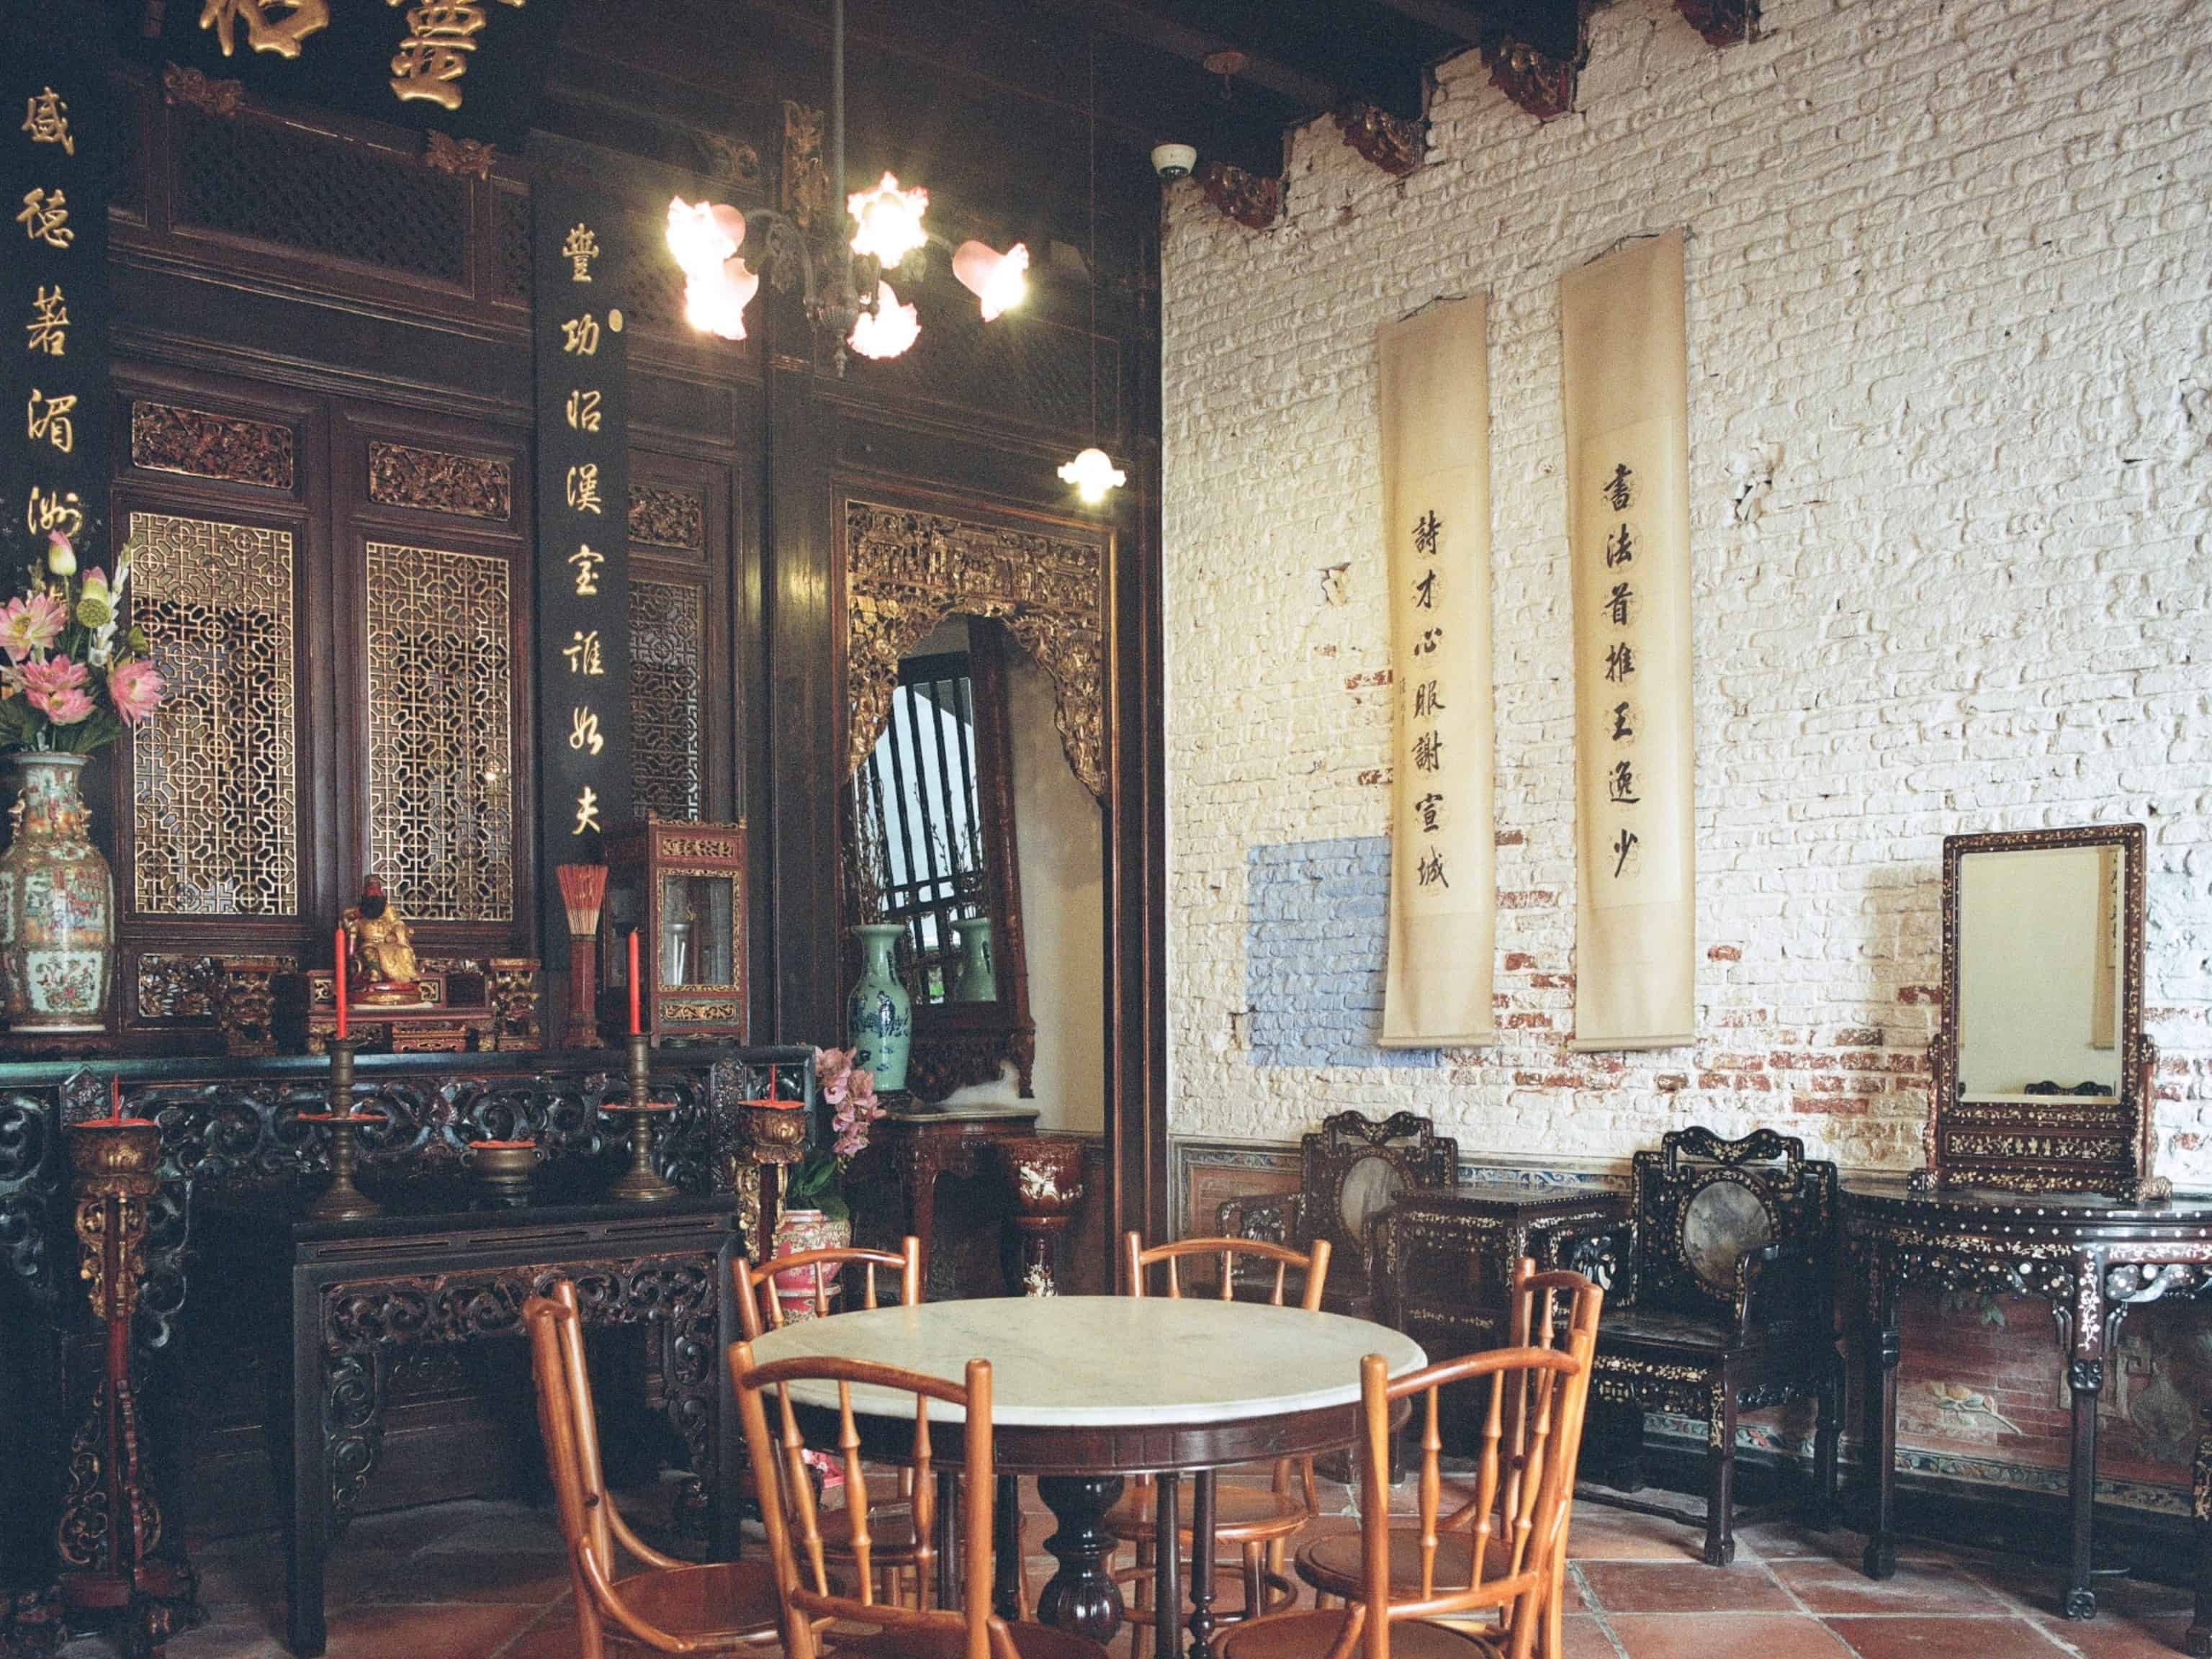 Đồ nội thất chạm khắc công phu tại một ngôi nhà của người Peranakan có niên đại từ thế kỷ 19. Ảnh: National Geographic